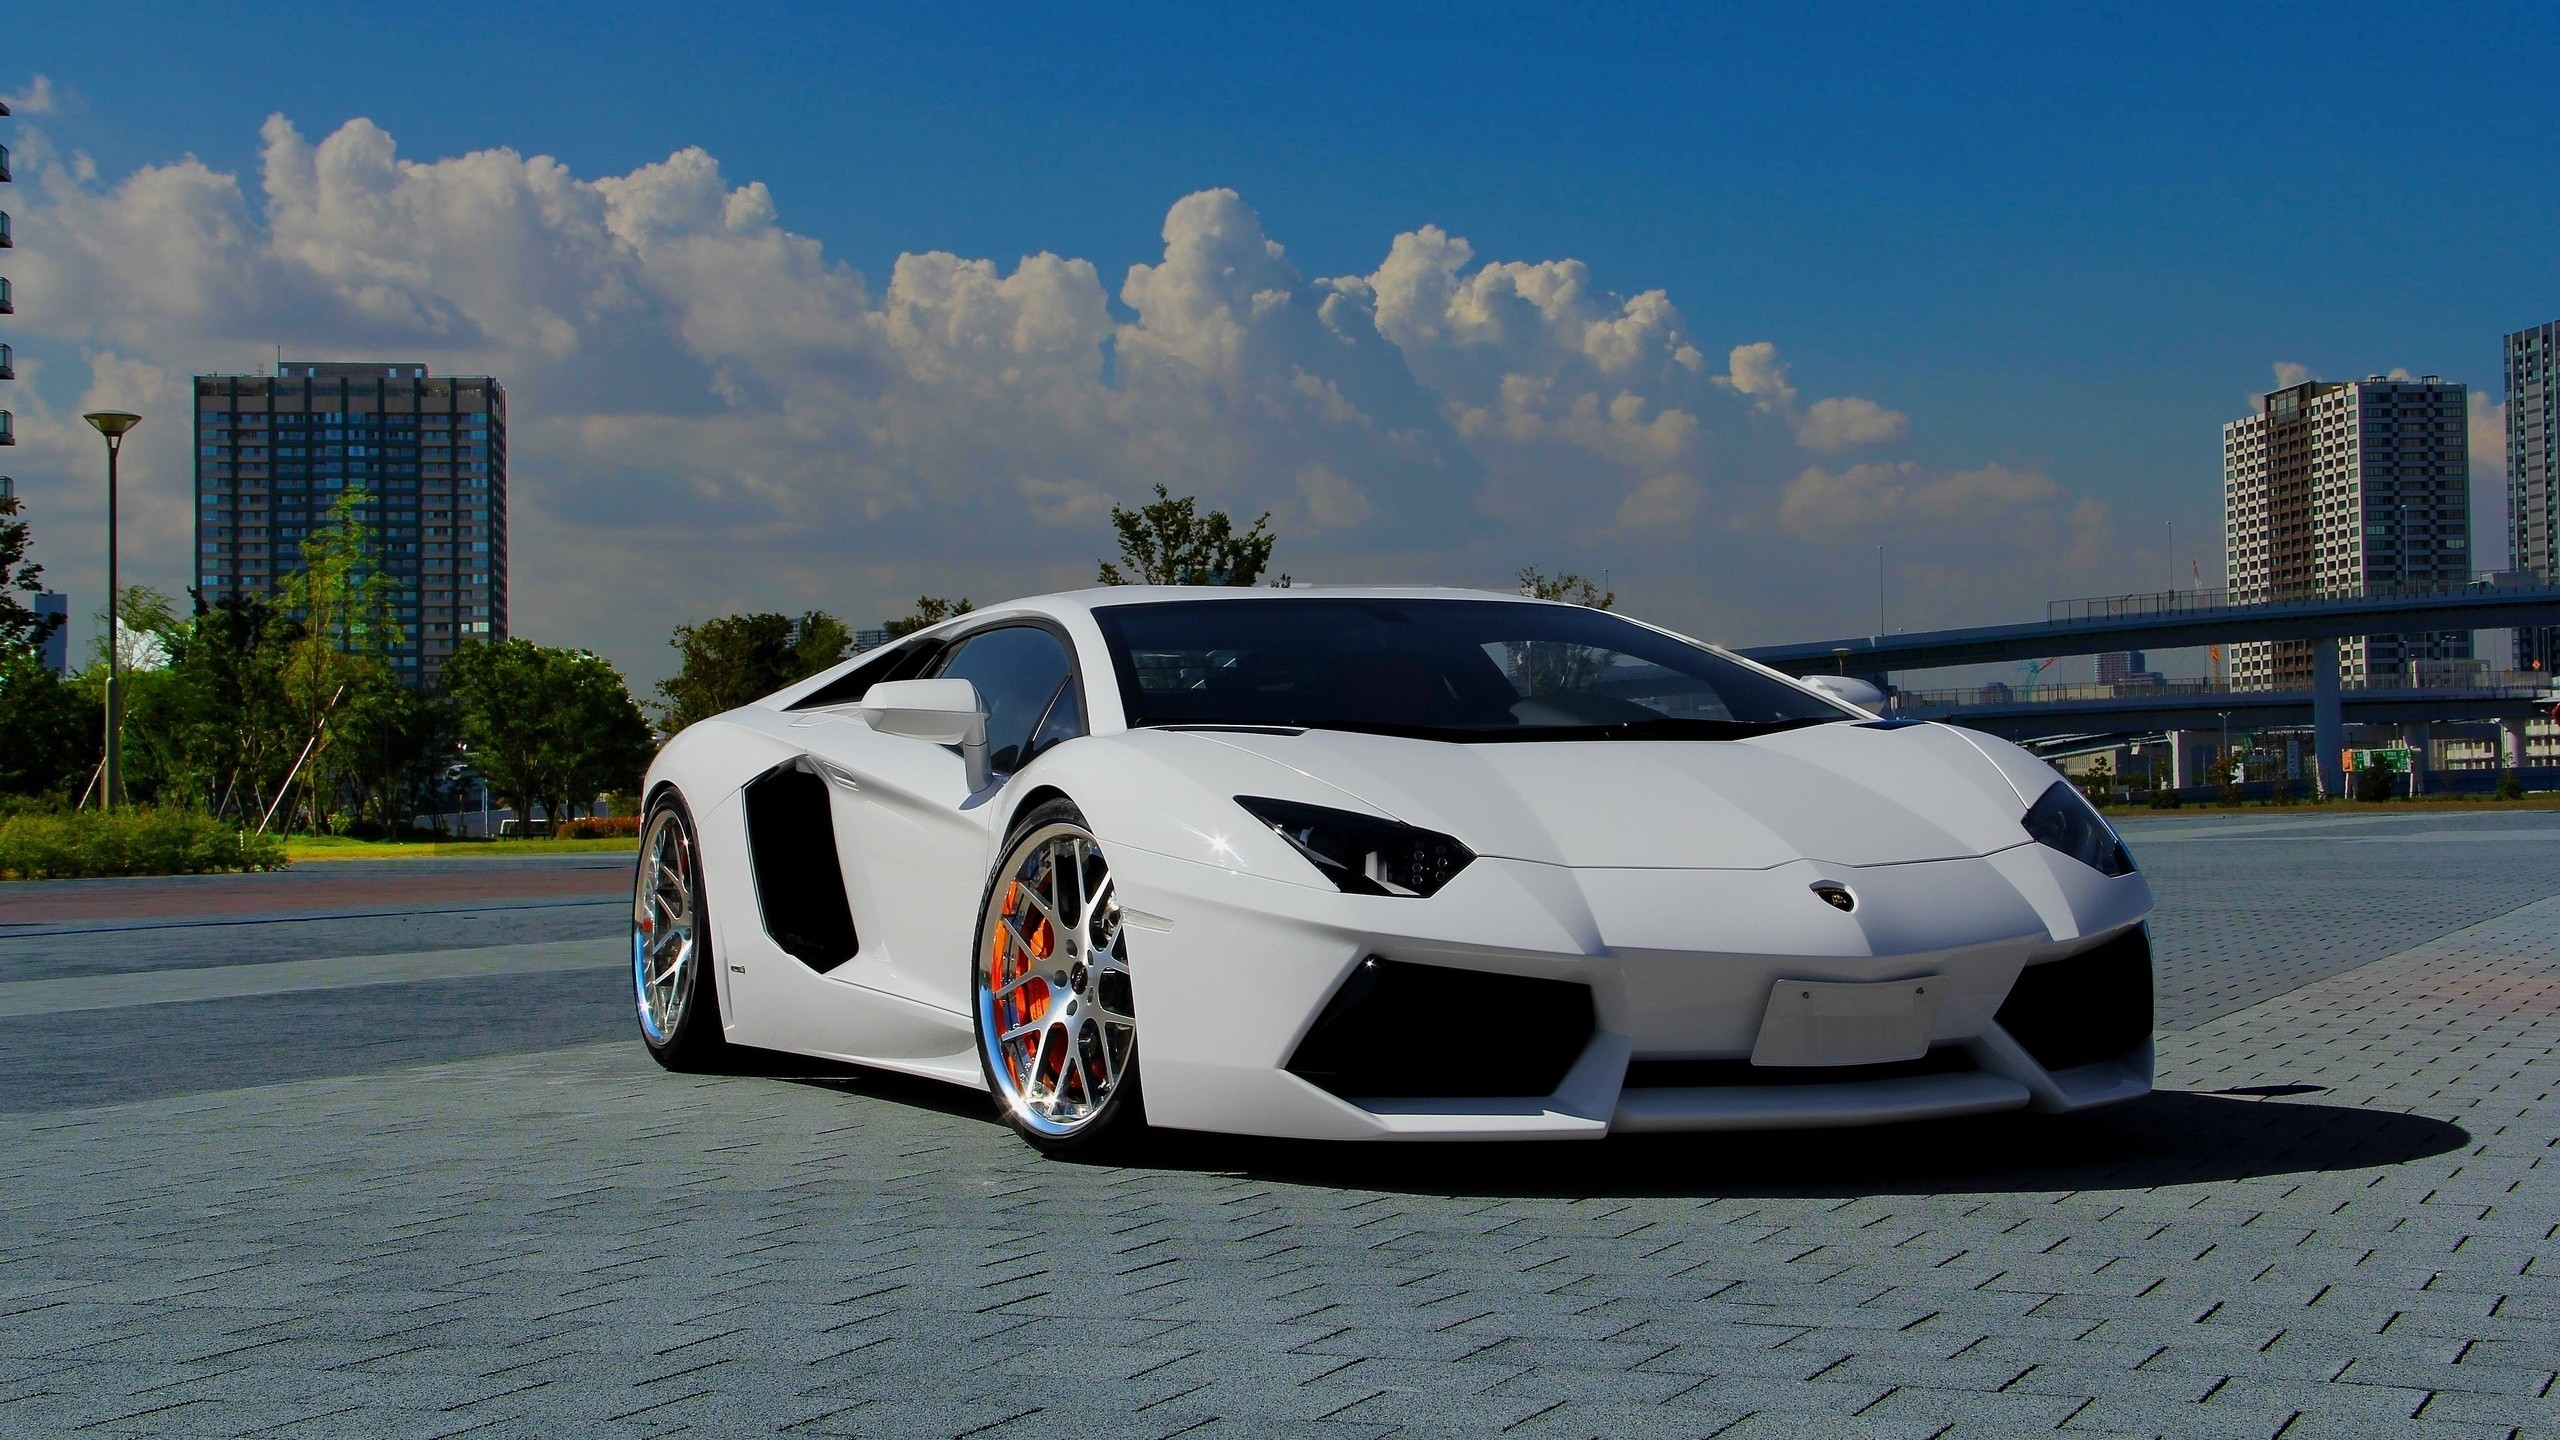 2560x1440 Lamborghini White Wallpapers HD | PixelsTalk.